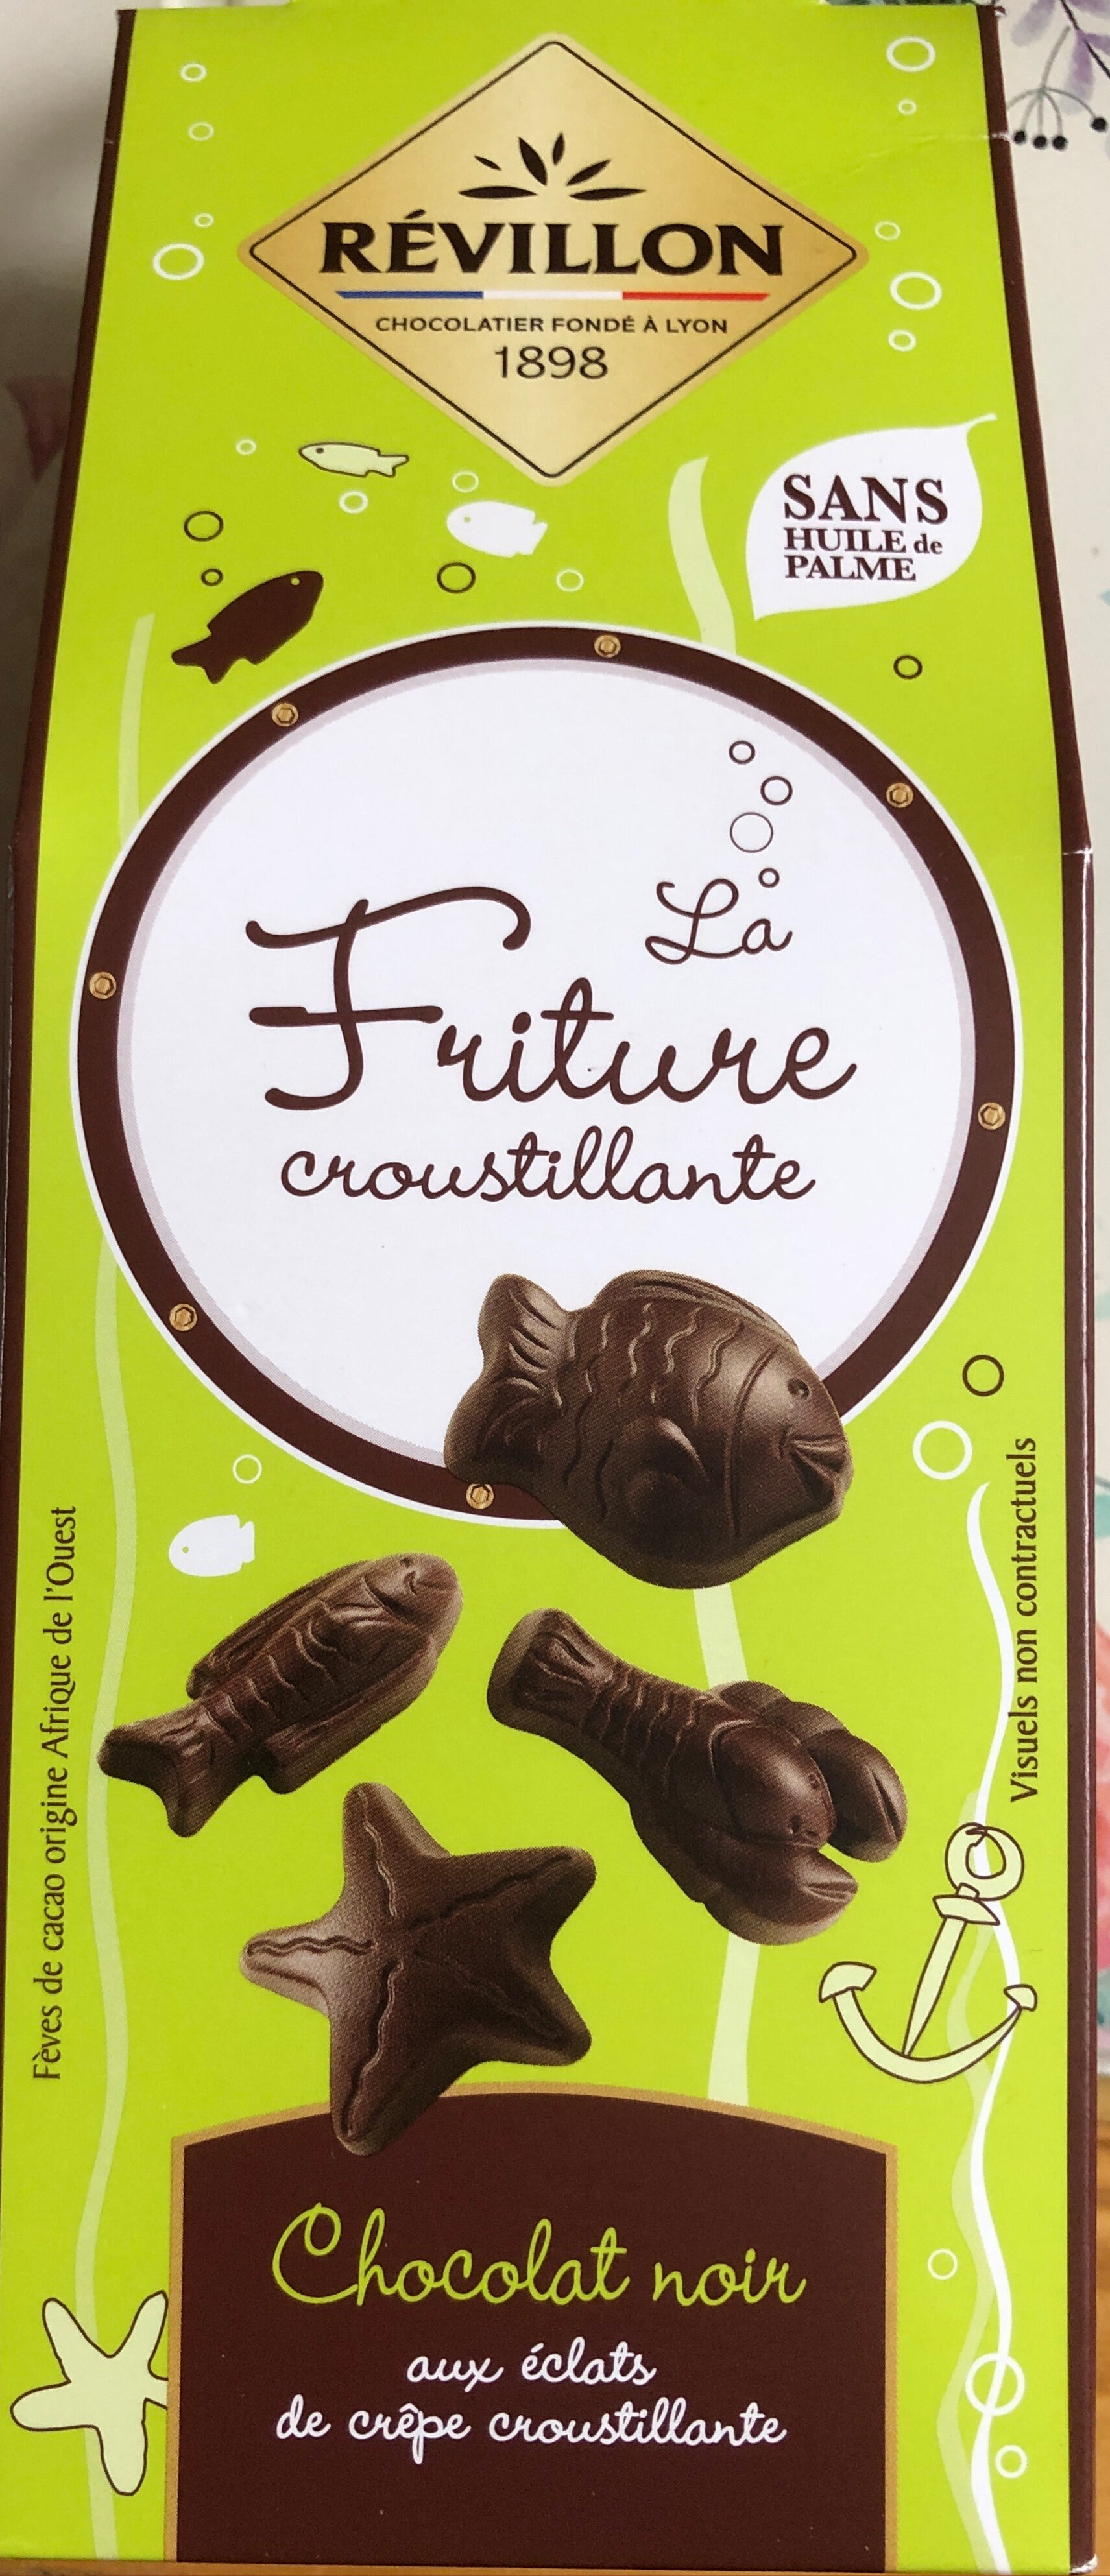 La Friture croustillante chocolat noir - Révillon - 190 g